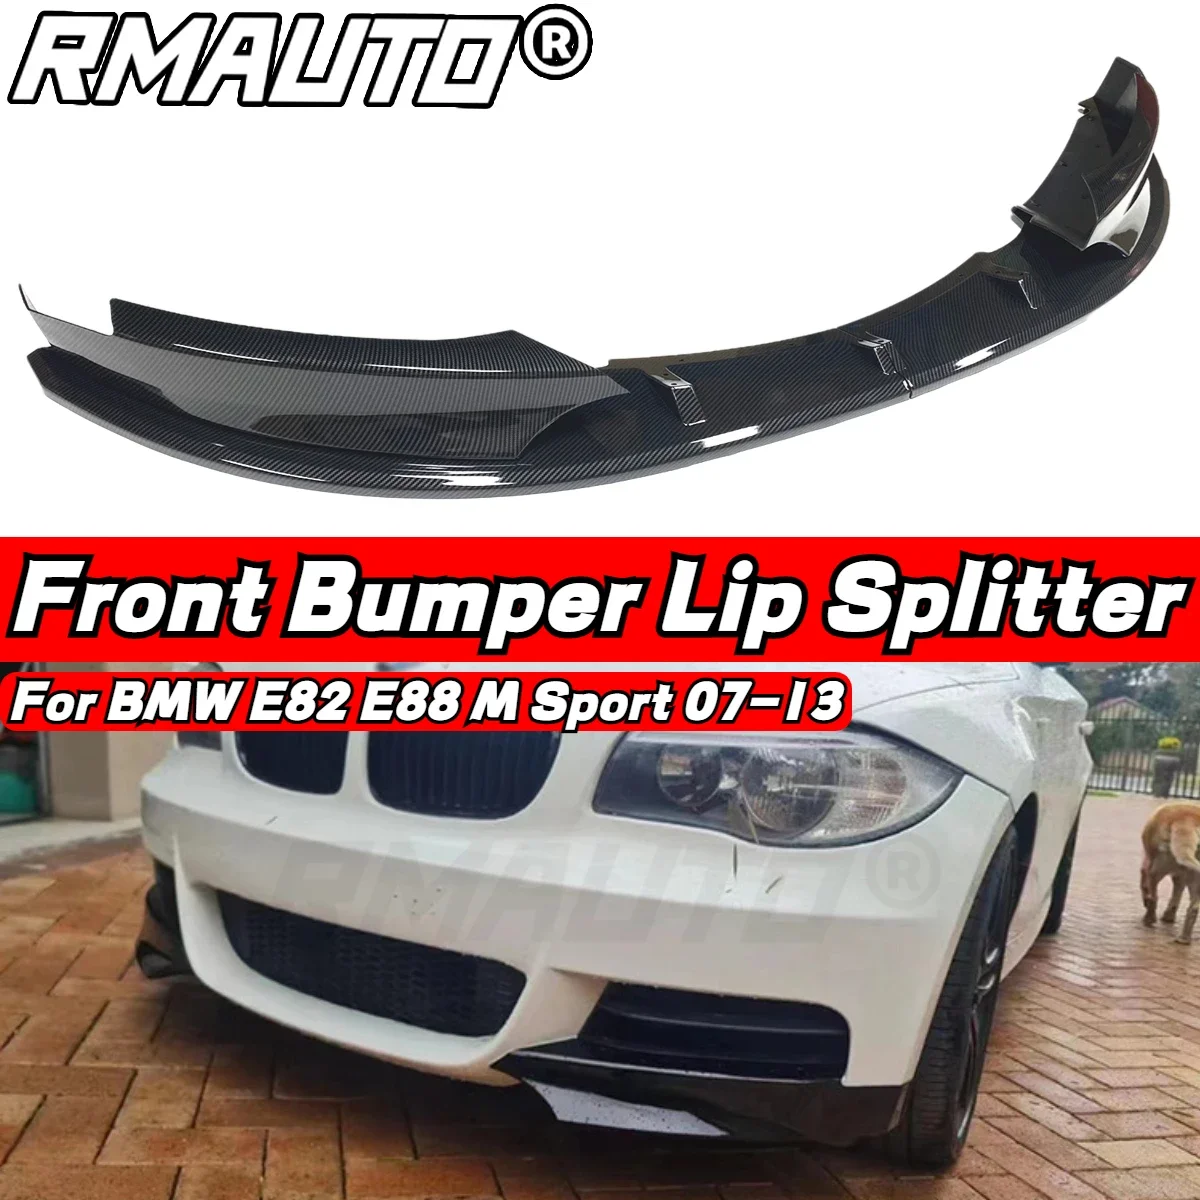 

RMAUTO Carbon Fiber Car Front Bumper Splitter Spoiler Lip Diffuser For BMW 1 Series E82 E88 M Sport 2007-2013 Diffuser Body Kit